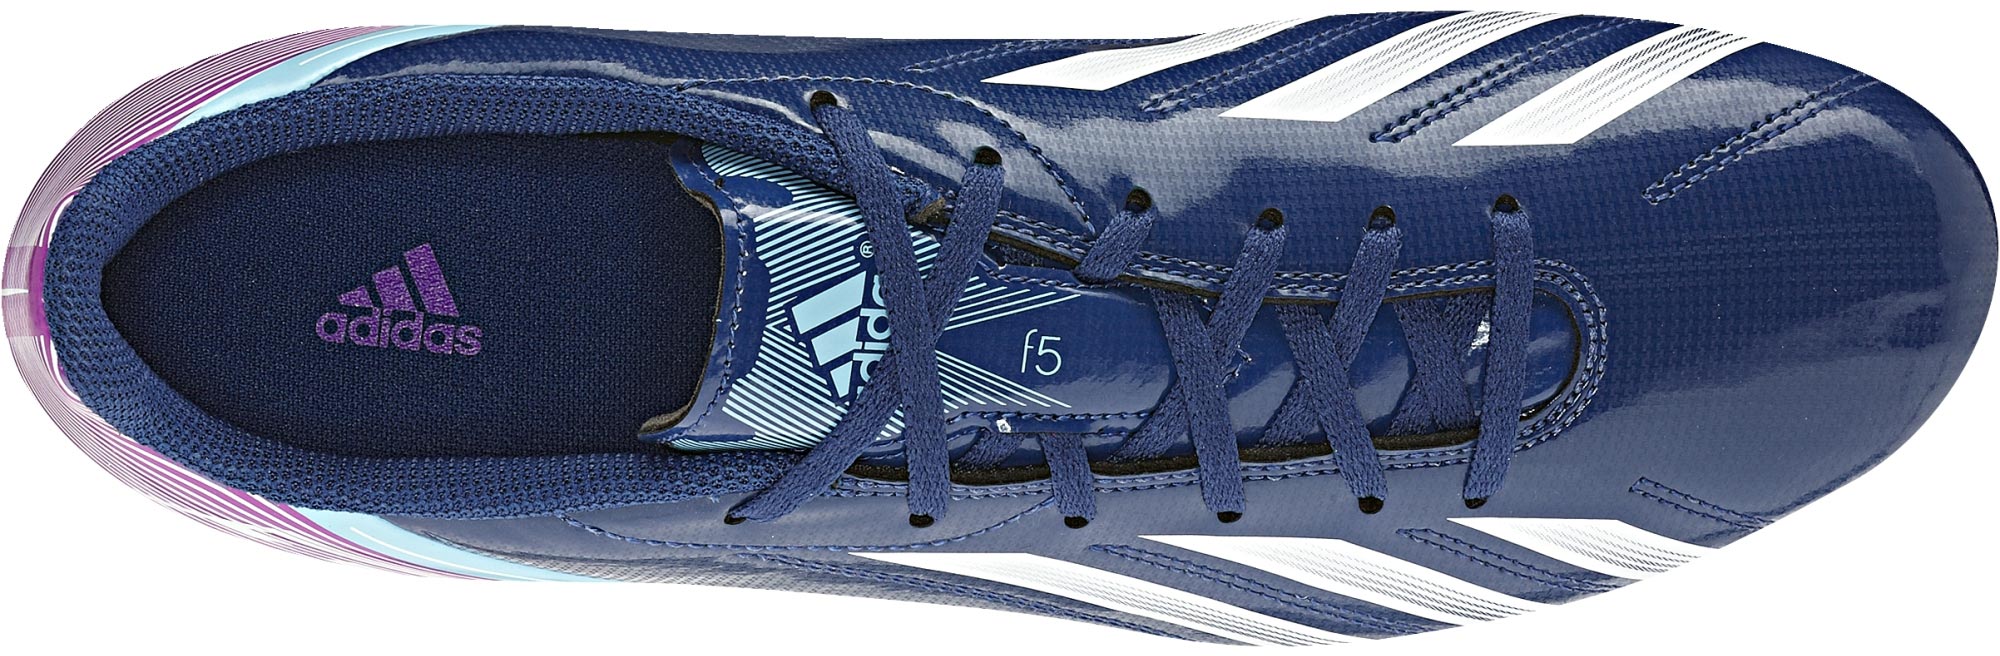 F5 TRX FG - Pánská fotbalová obuv